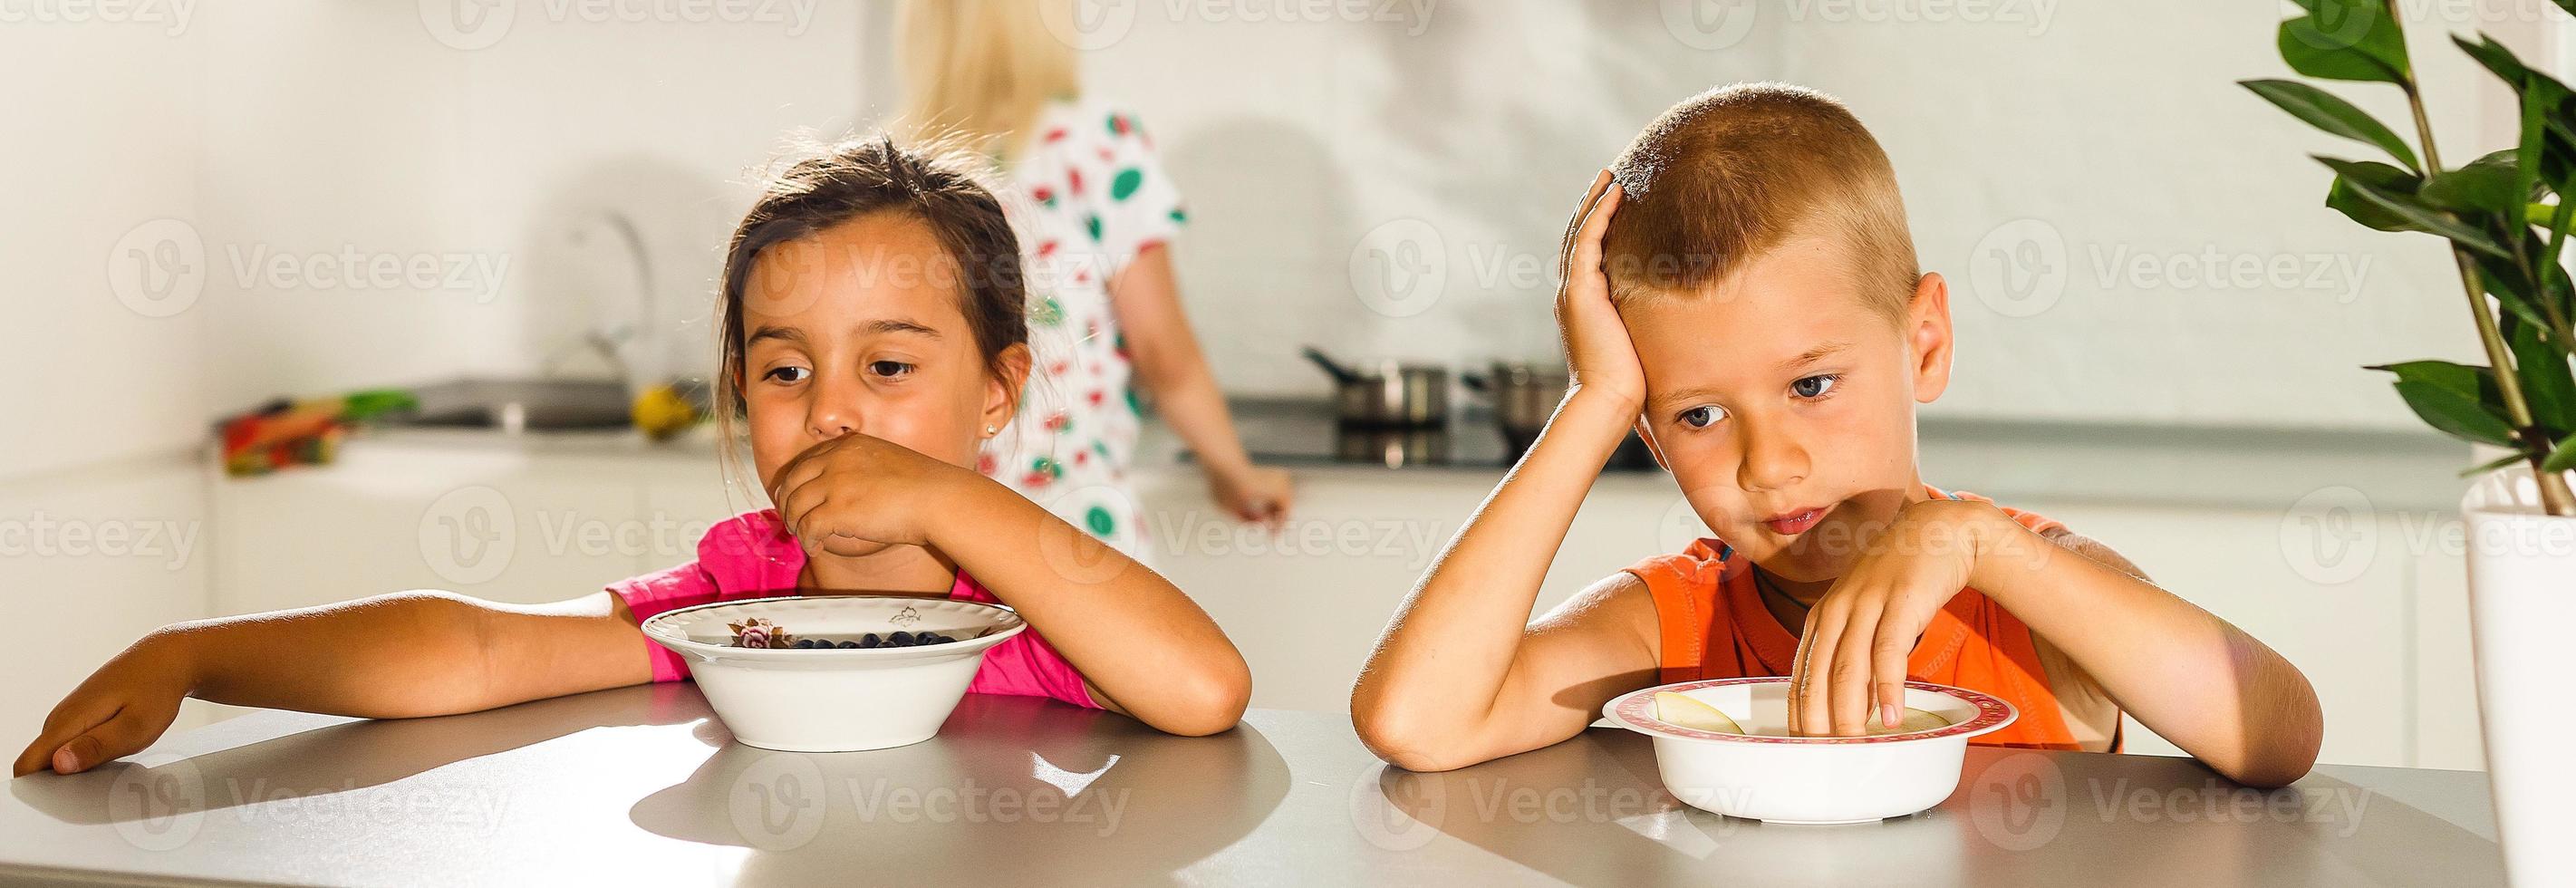 contento joven familia, madre con dos niños, adorable niñito niña y gracioso sucio chico teniendo sano desayuno comiendo Fruta y lácteos, sentado en un blanco soleado cocina con ventana foto